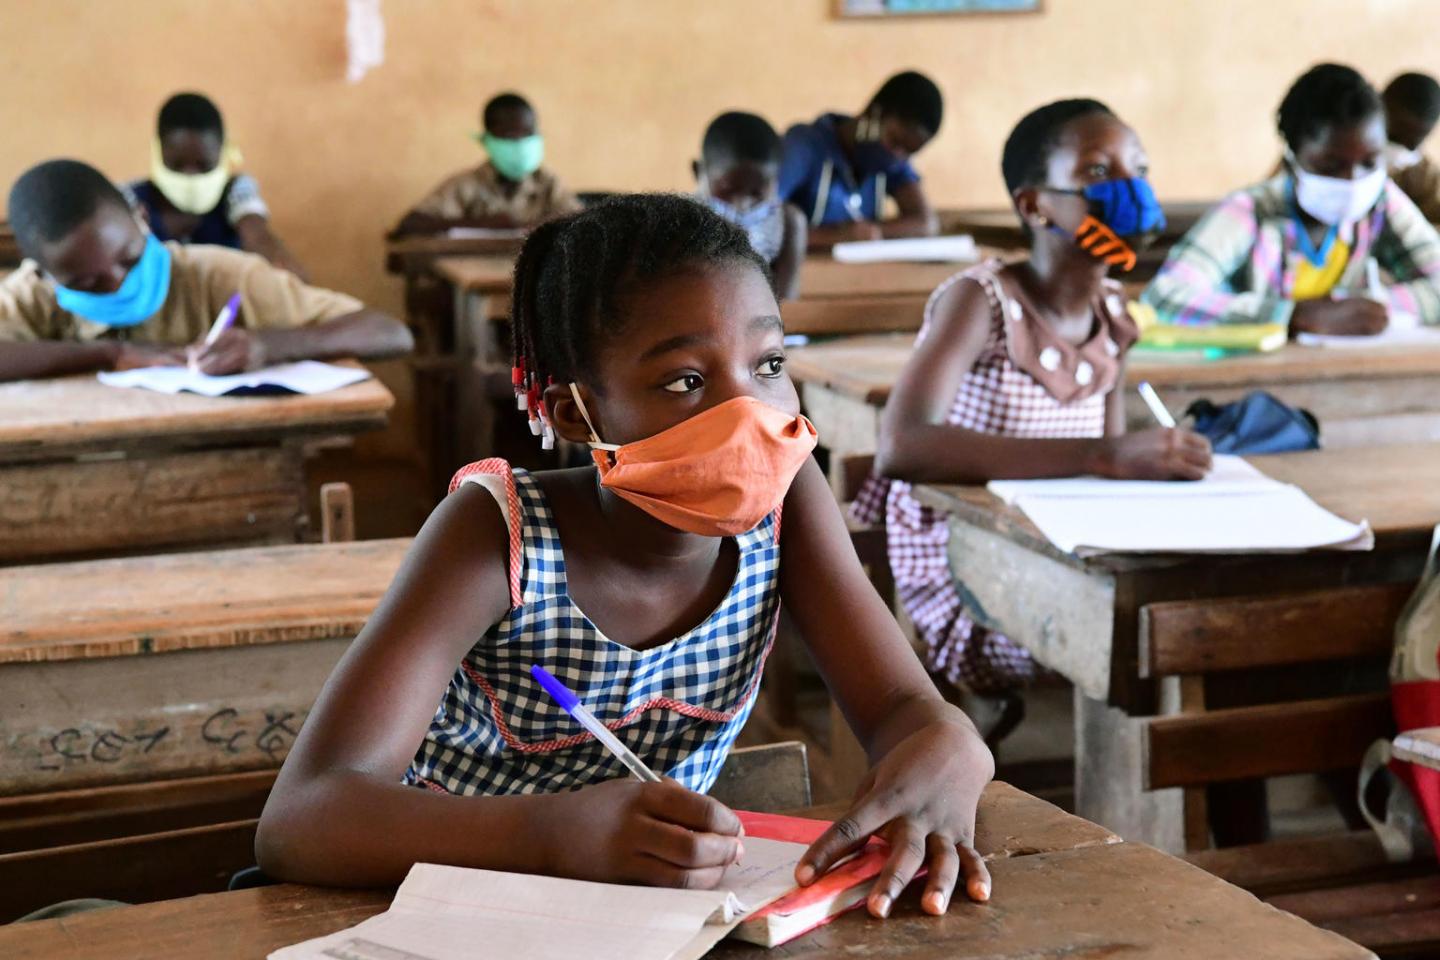 Relance des services d’éducation de base : L’Unicef et la Jica appuient l’Inspection d’académie de Pikine-Guédiawaye